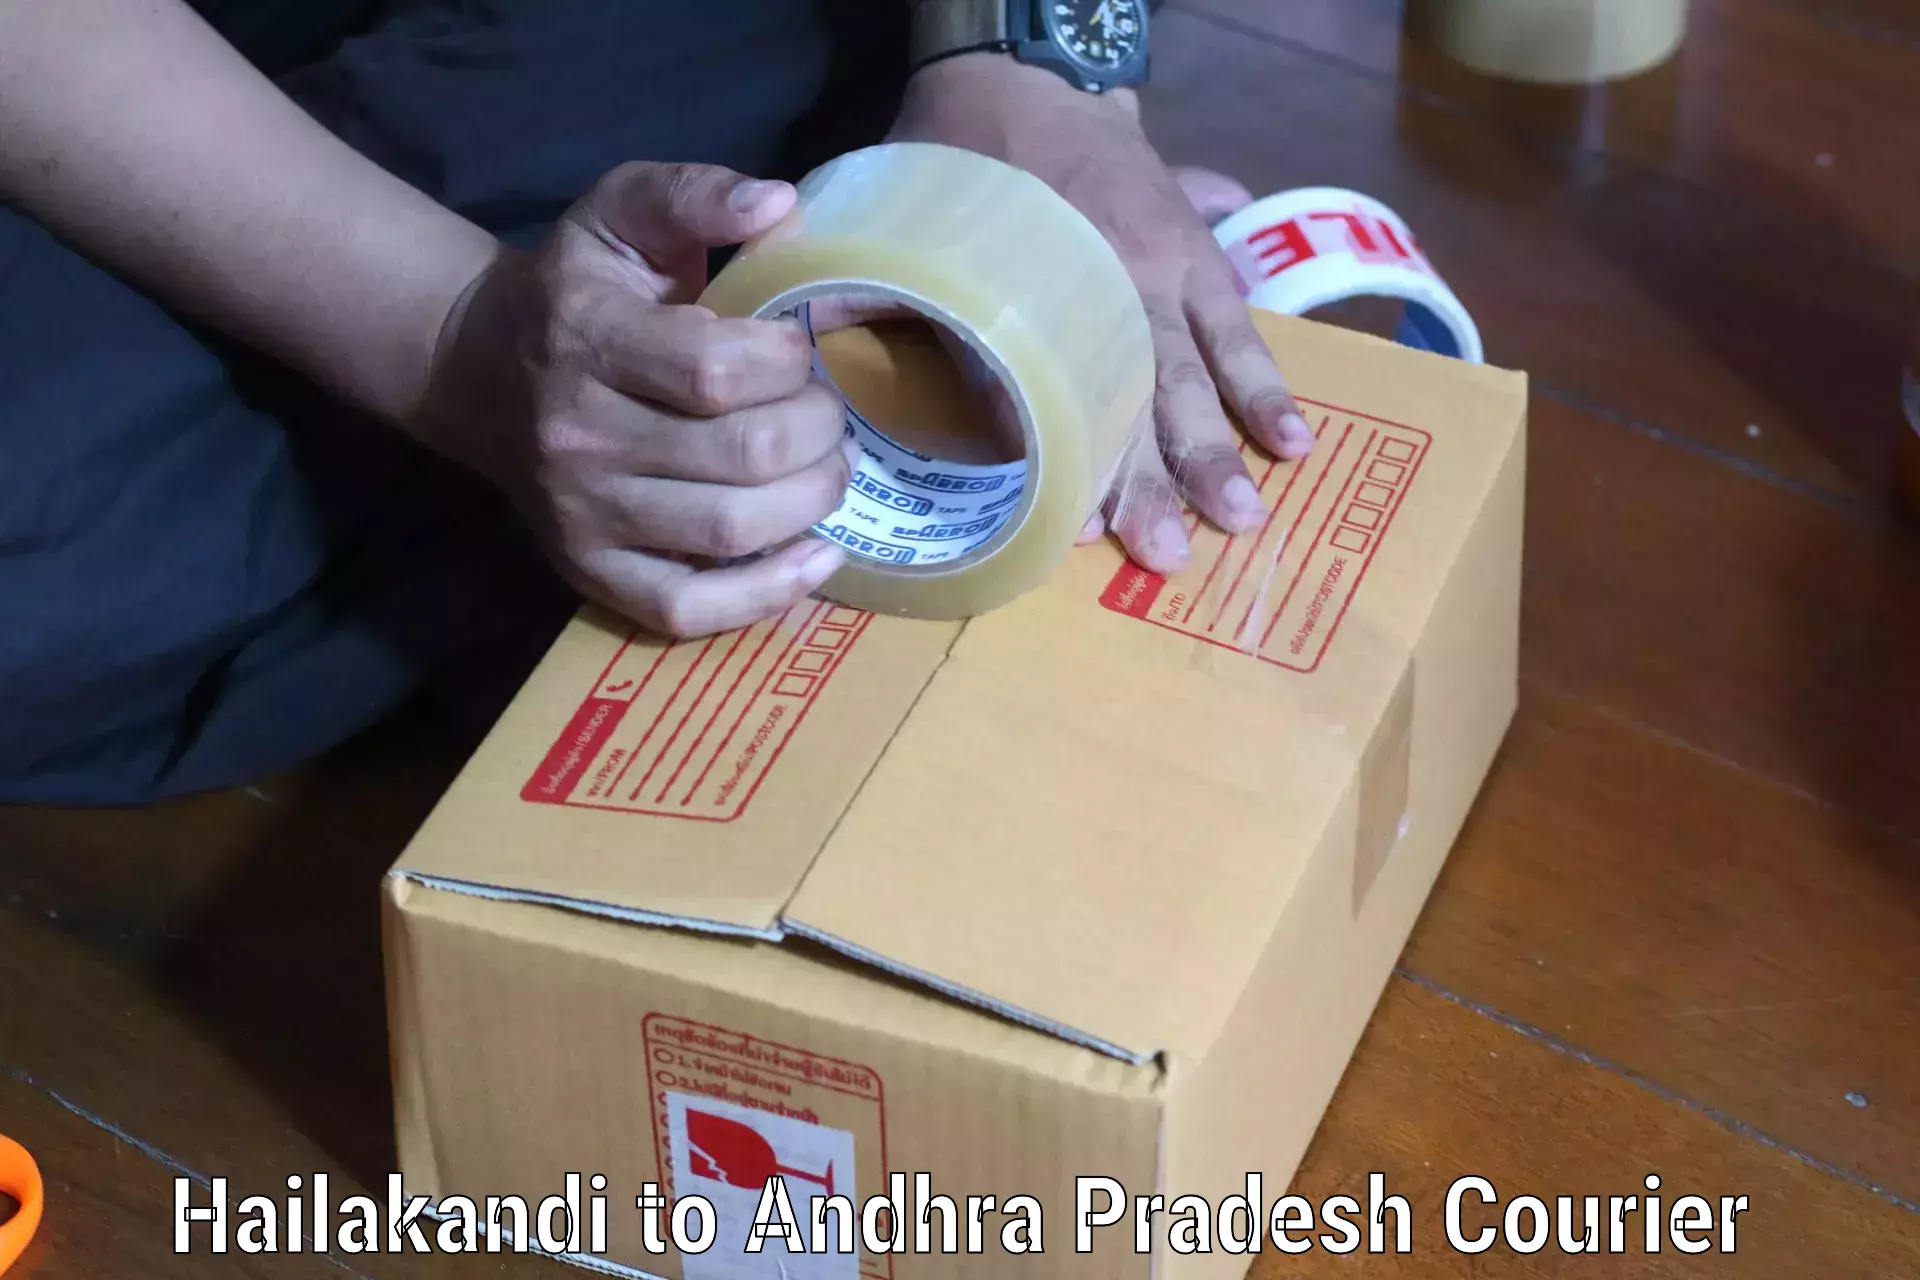 State-of-the-art courier technology Hailakandi to Konthamuru